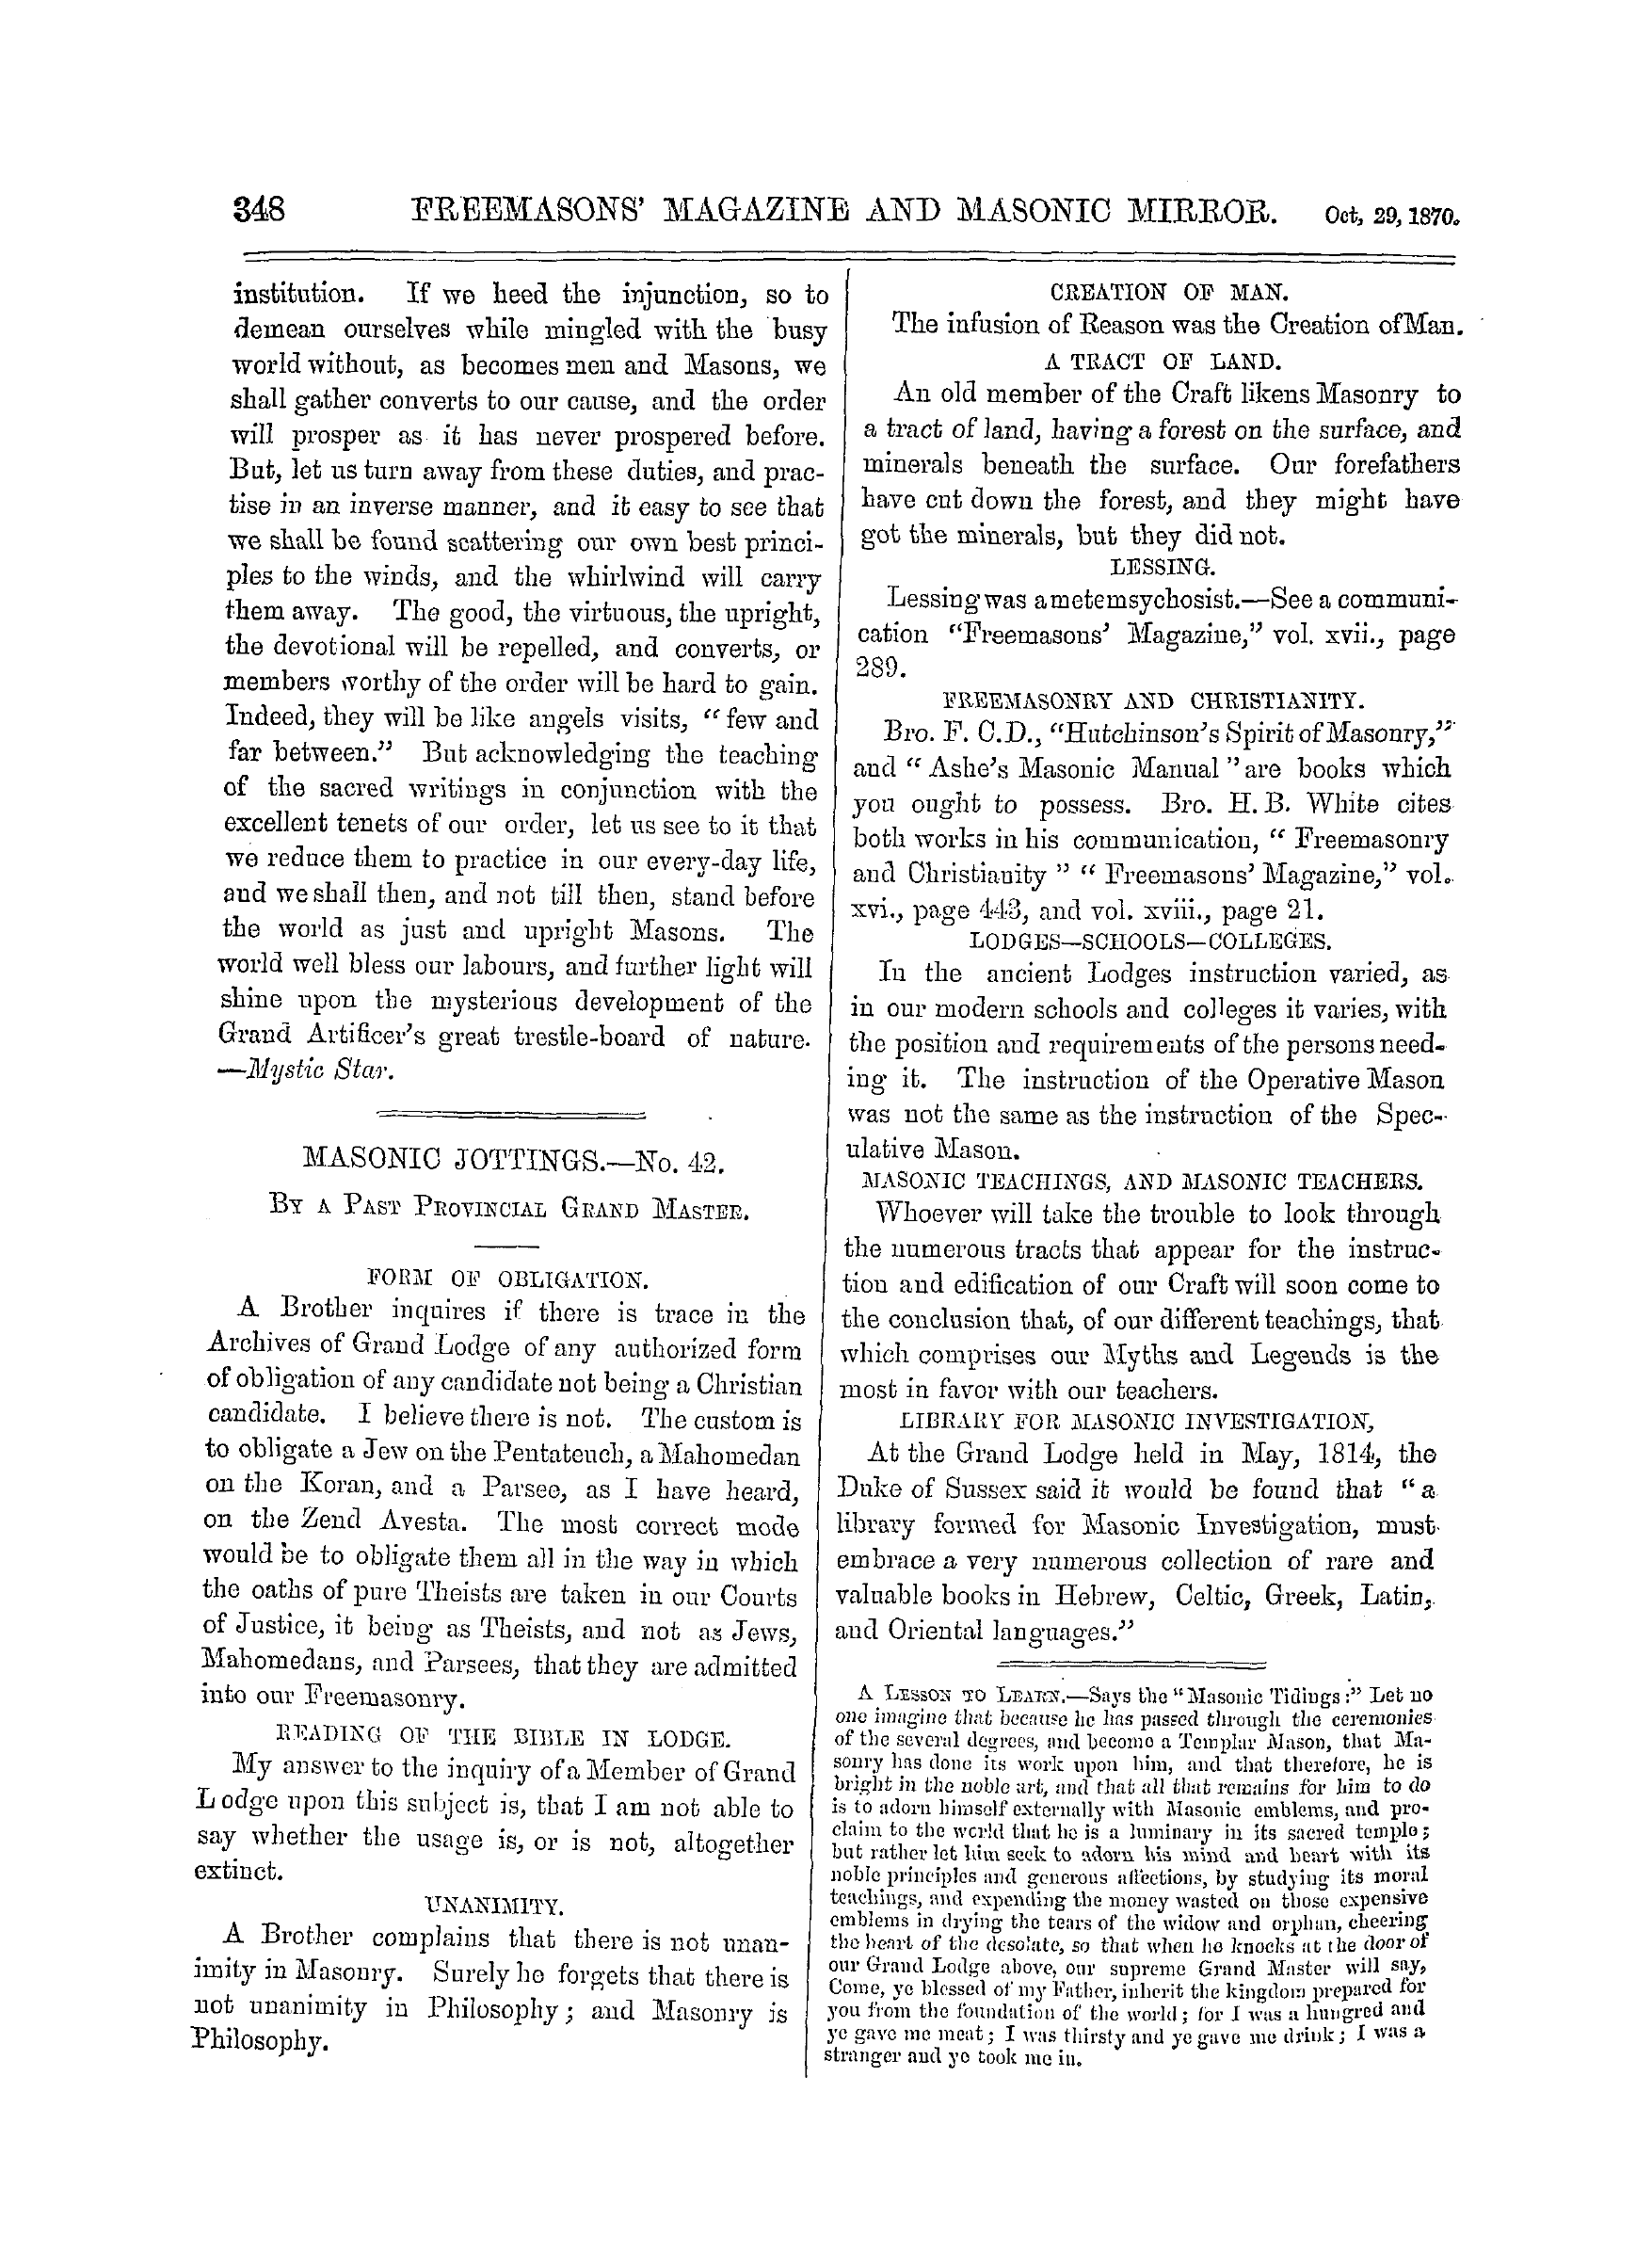 The Freemasons' Monthly Magazine: 1870-10-29: 8